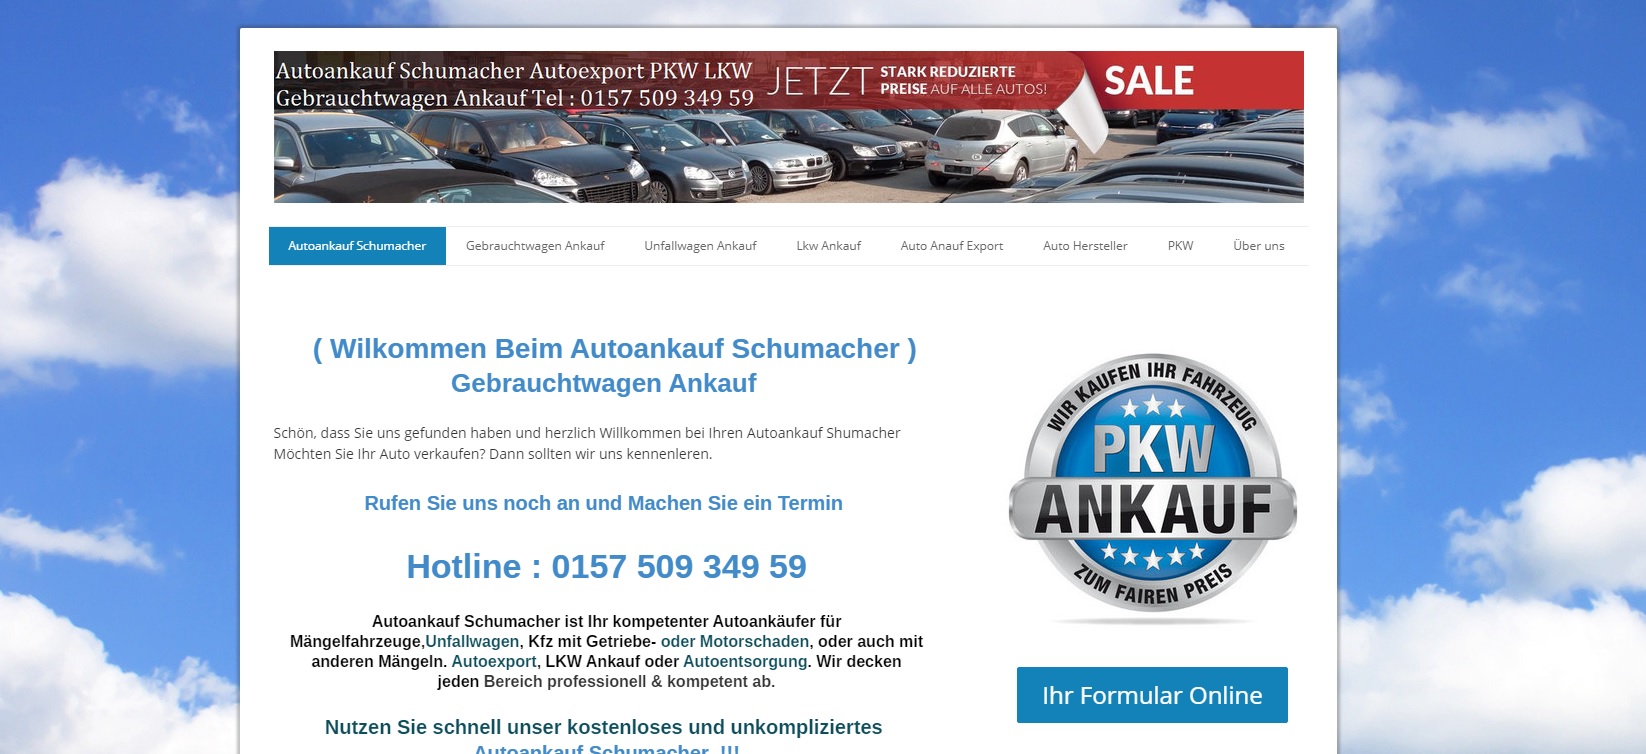 autoankauf recklinghausen bietet dir einen fairen und unkomplizierten autoankauf - Autoankauf Recklinghausen bietet dir einen fairen und unkomplizierten Autoankauf